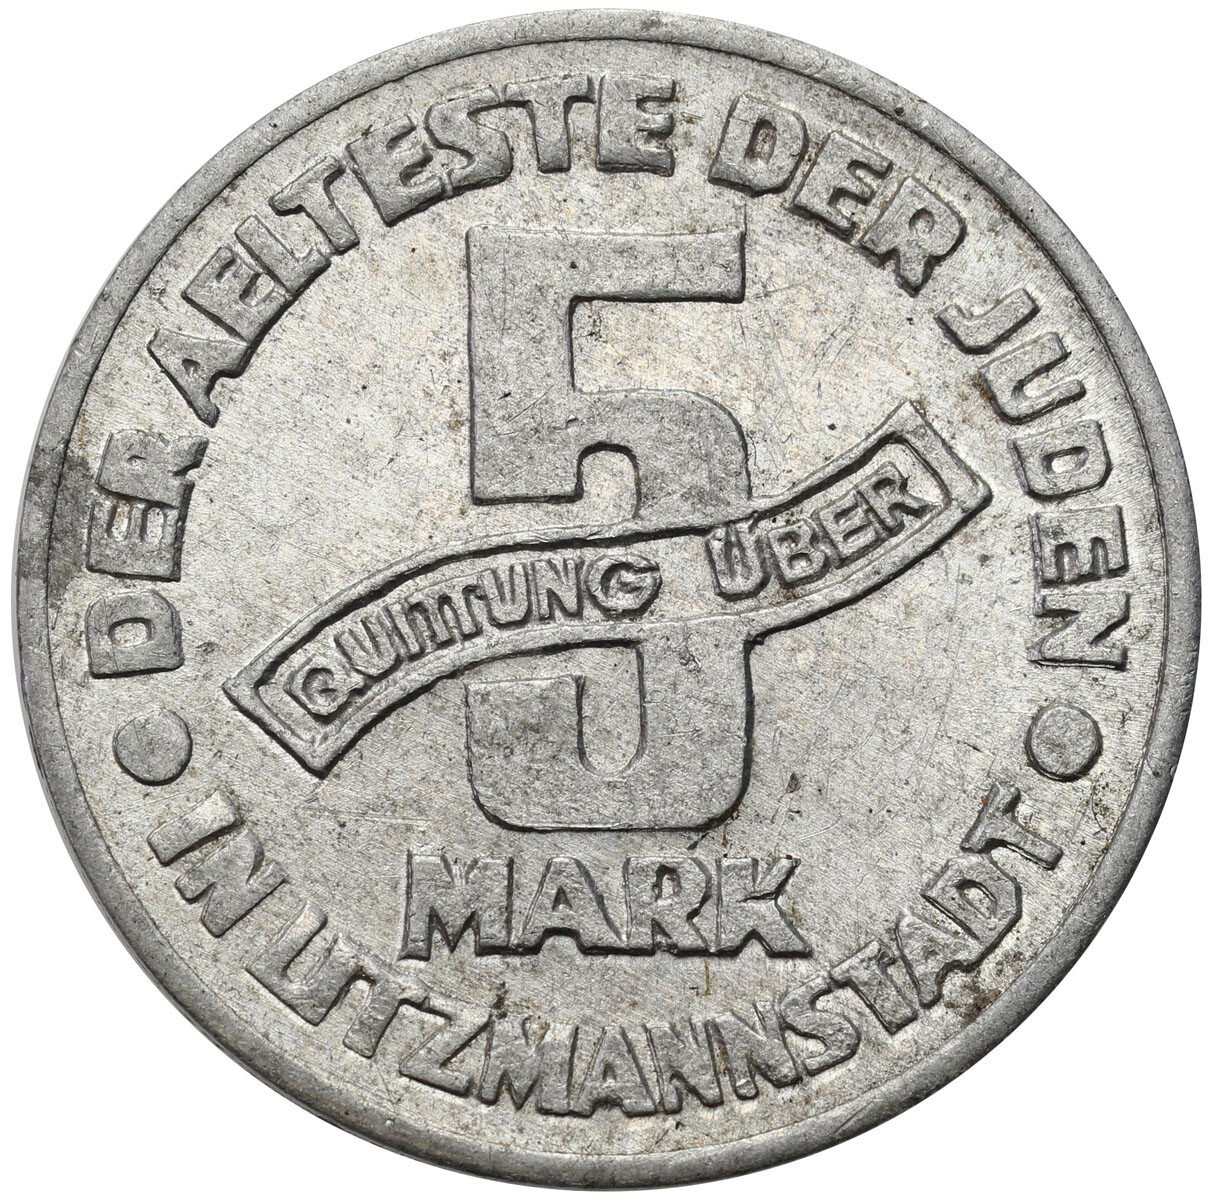 Getto Łódź. 5 marek 1943, aluminium – PIĘKNE